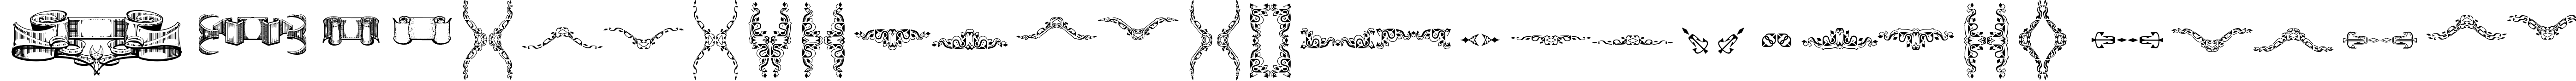 Пример написания английского алфавита шрифтом Deborah Extras/Ornaments